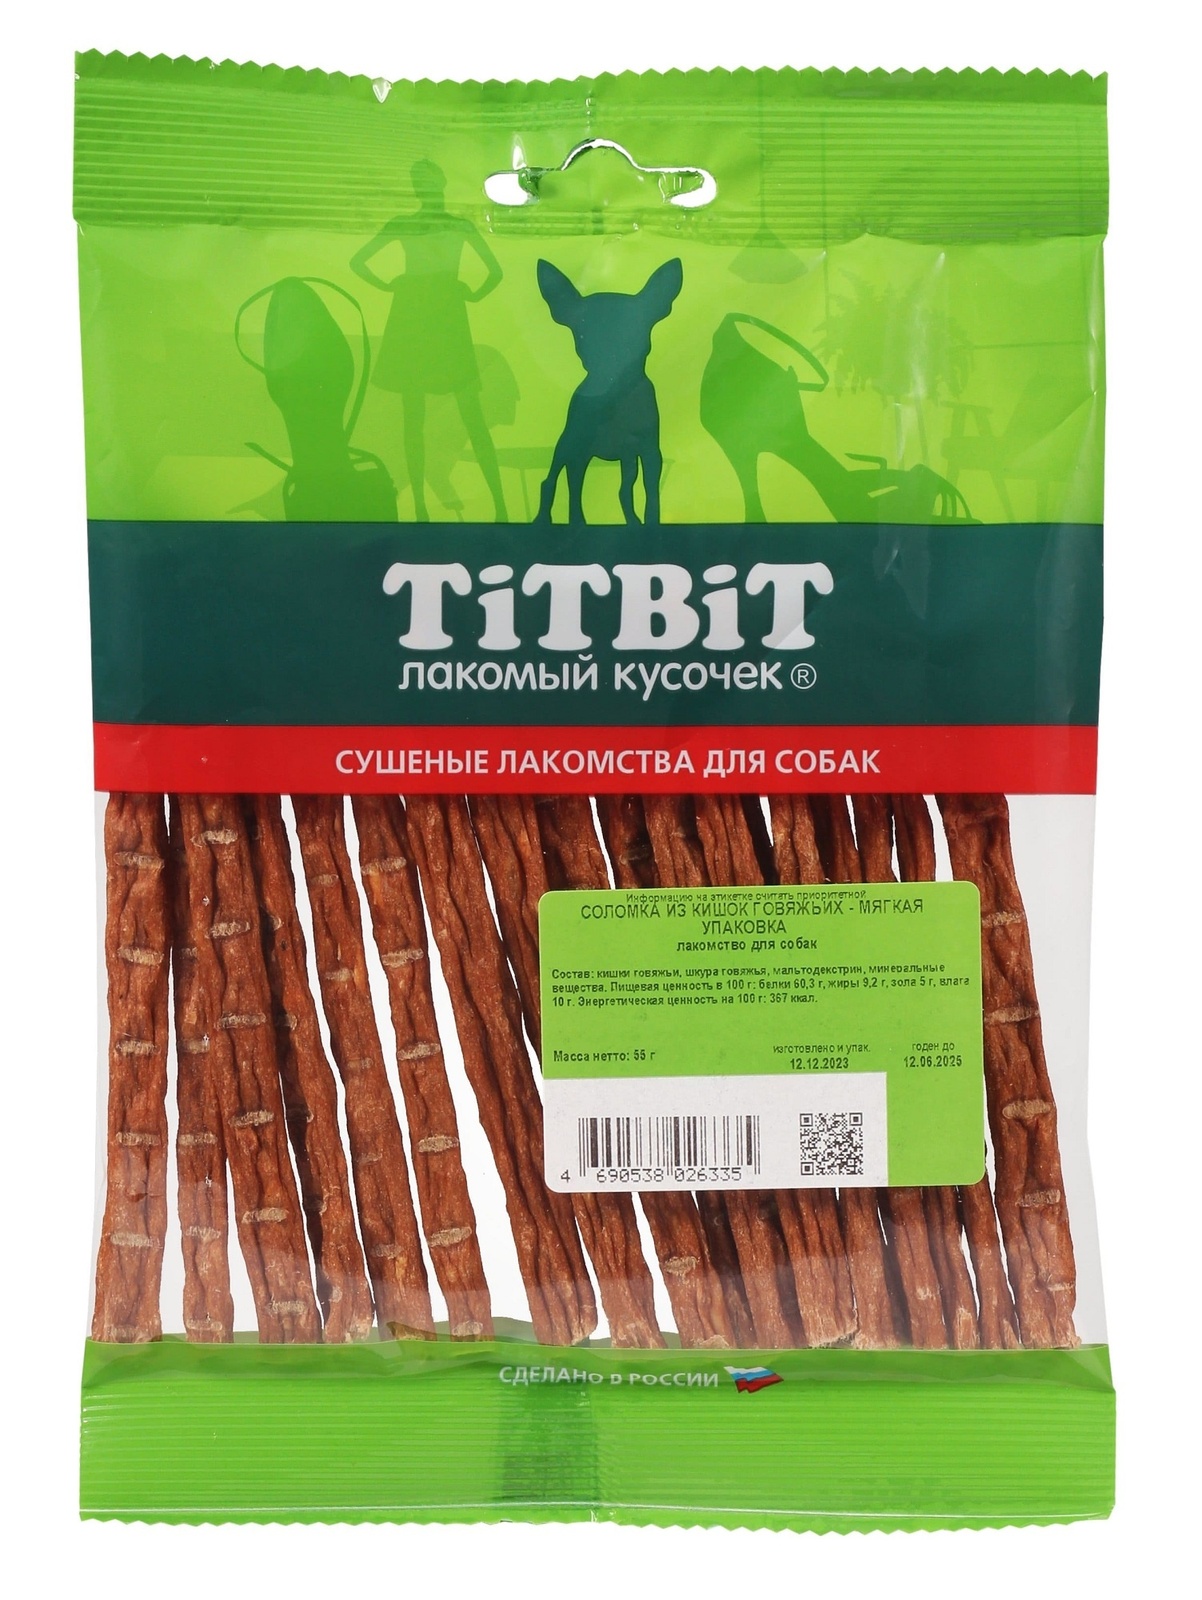 TiTBiT TiTBiT соломка из кишок говяжьих - мягкая упаковка (50 г)